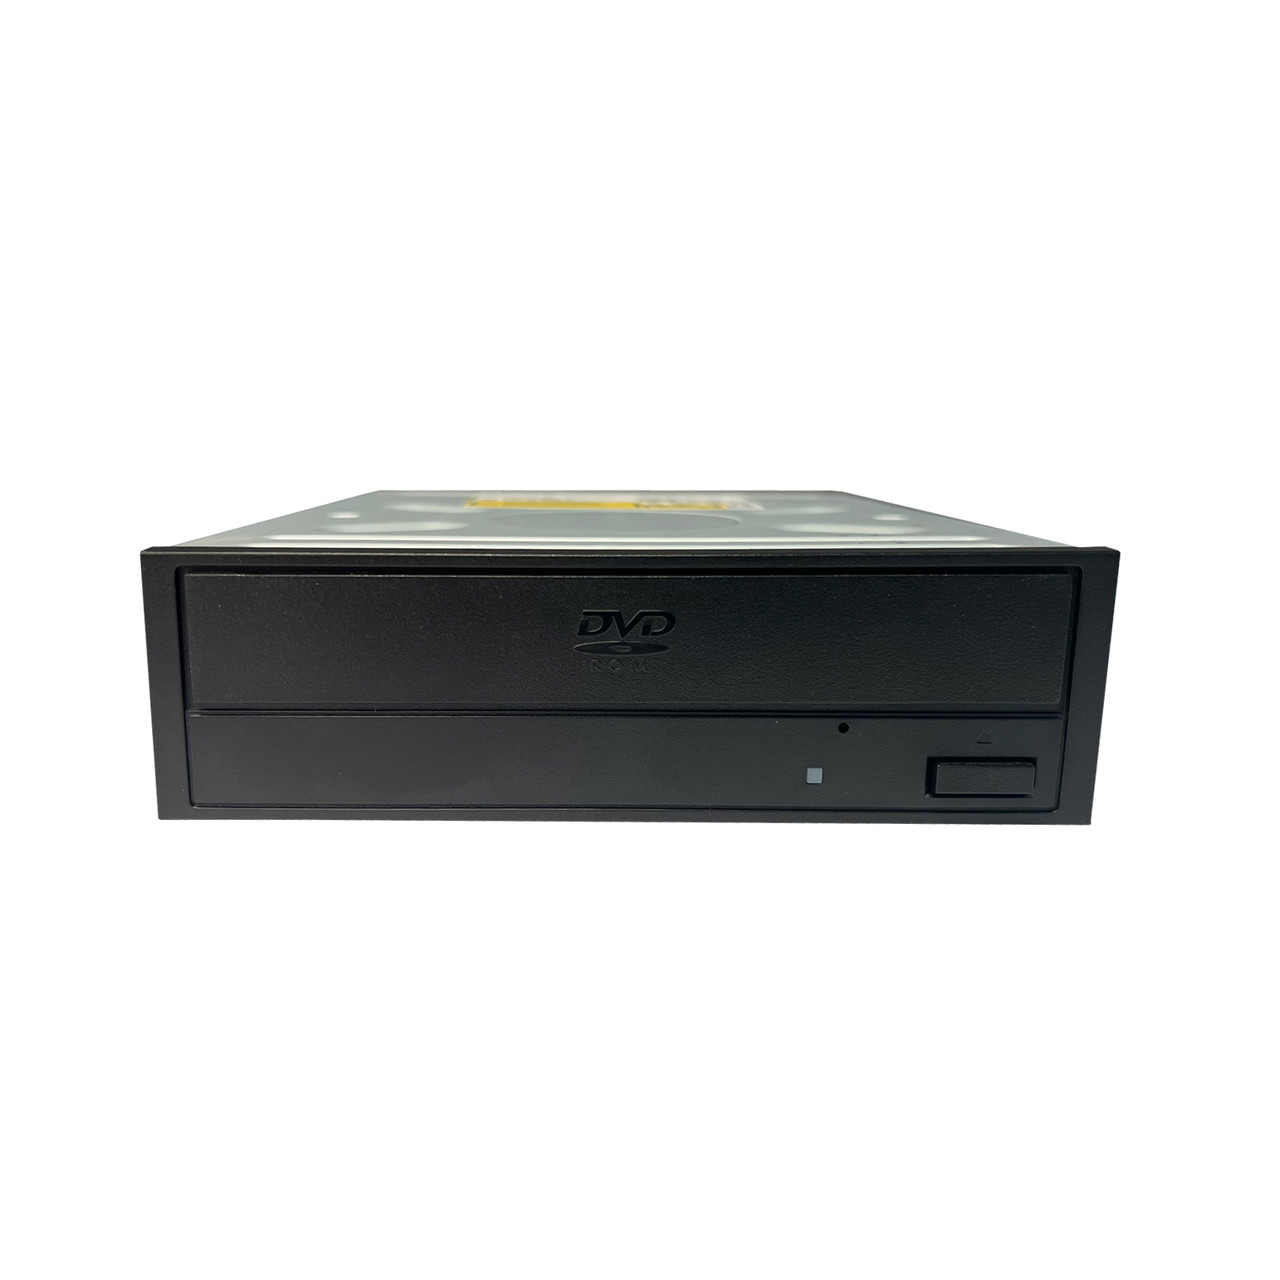 Dell 7GPH0 5.25" DVD-Rom SATA Optical Drive DH30N